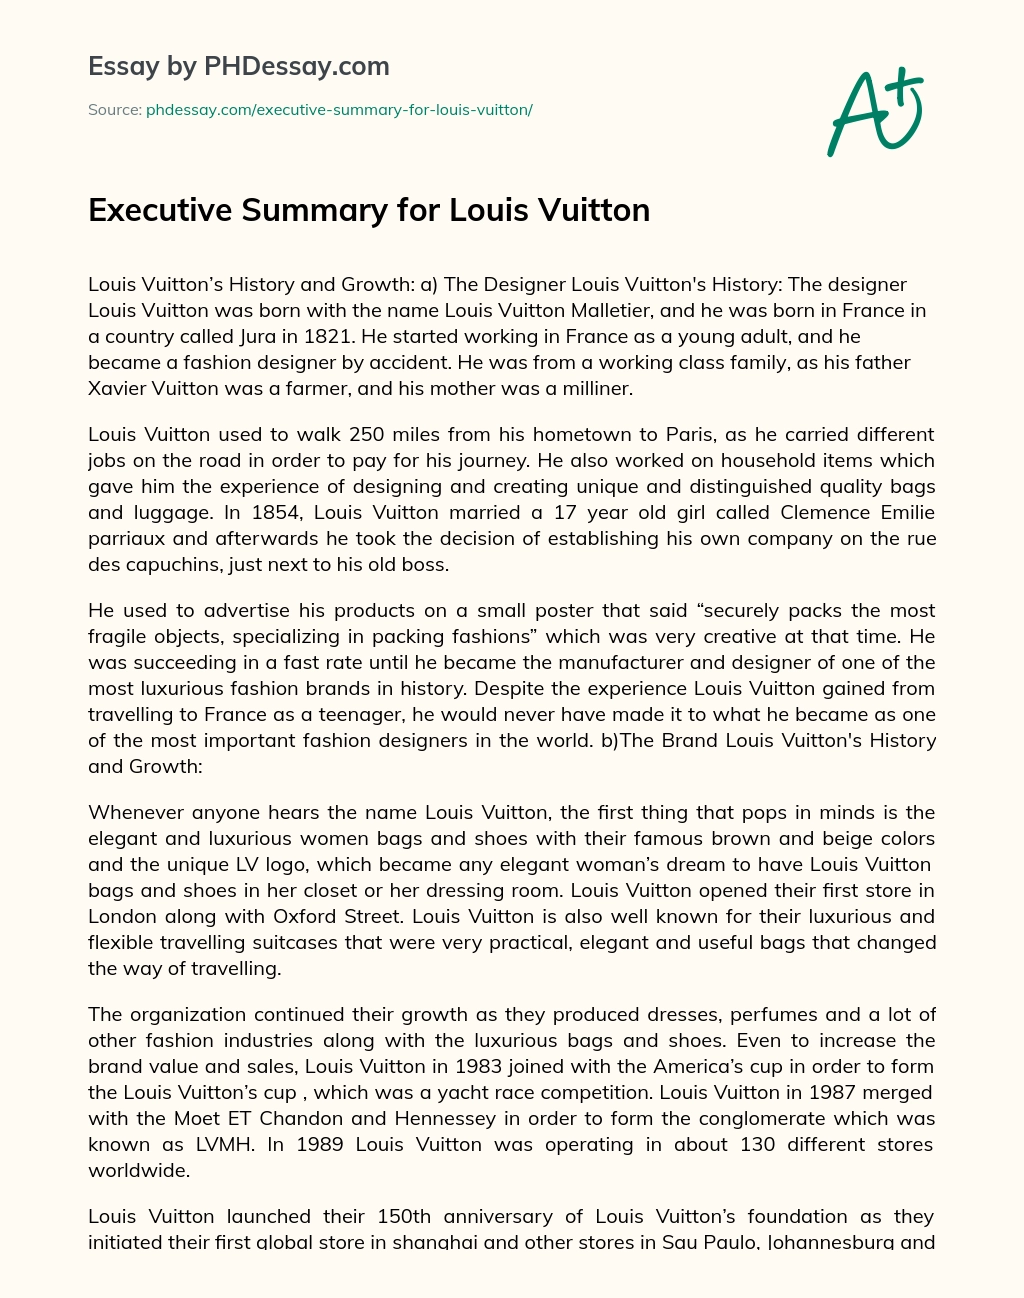 Executive Summary for Louis Vuitton essay